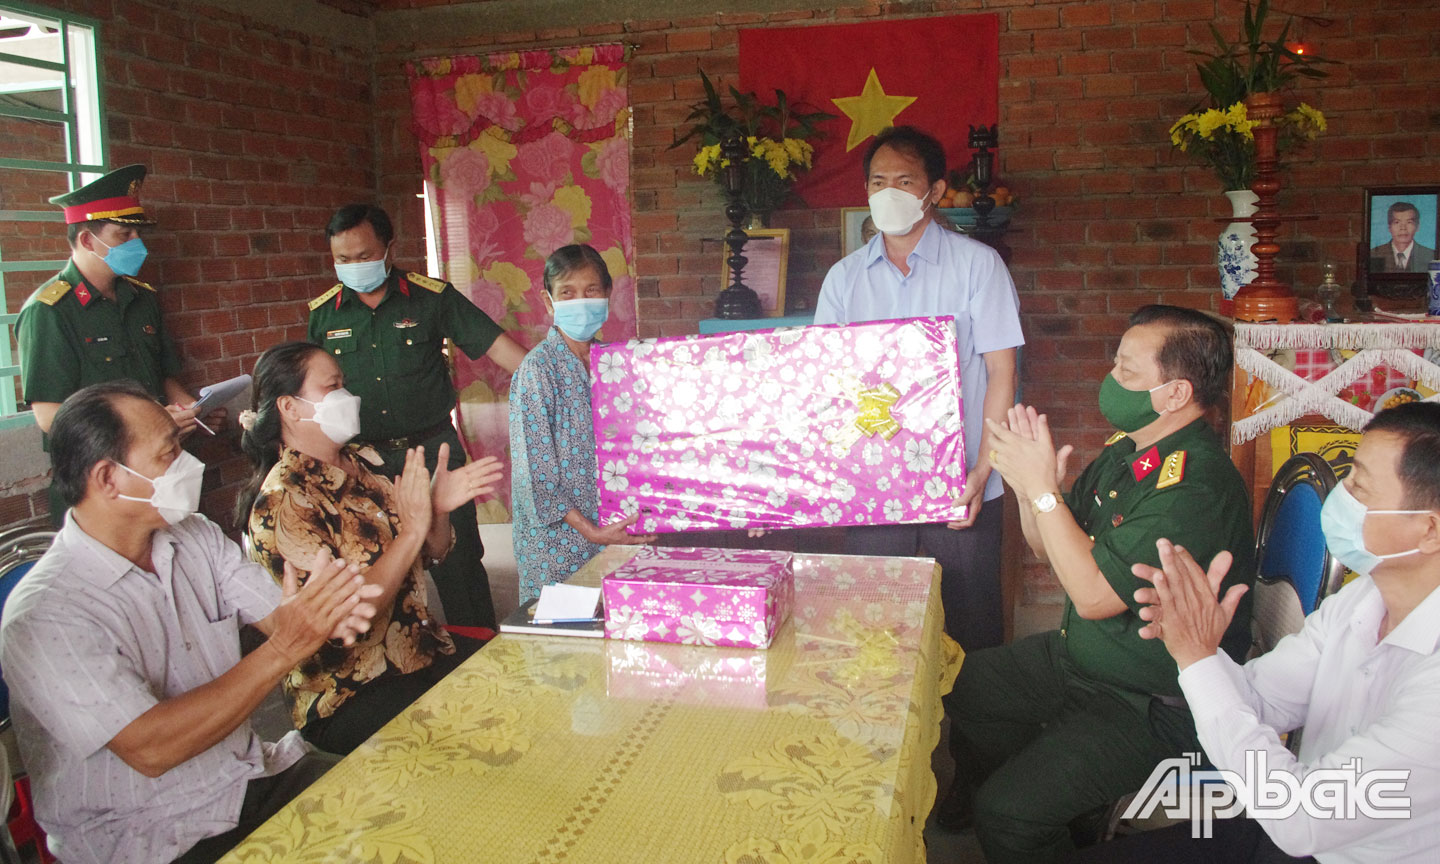 Ông Trương Văn Minh Tâm, Giám đốc Công ty nhà đất Minh Tâm tặng quà cho đồng chí Nguyễn Thị Bé.